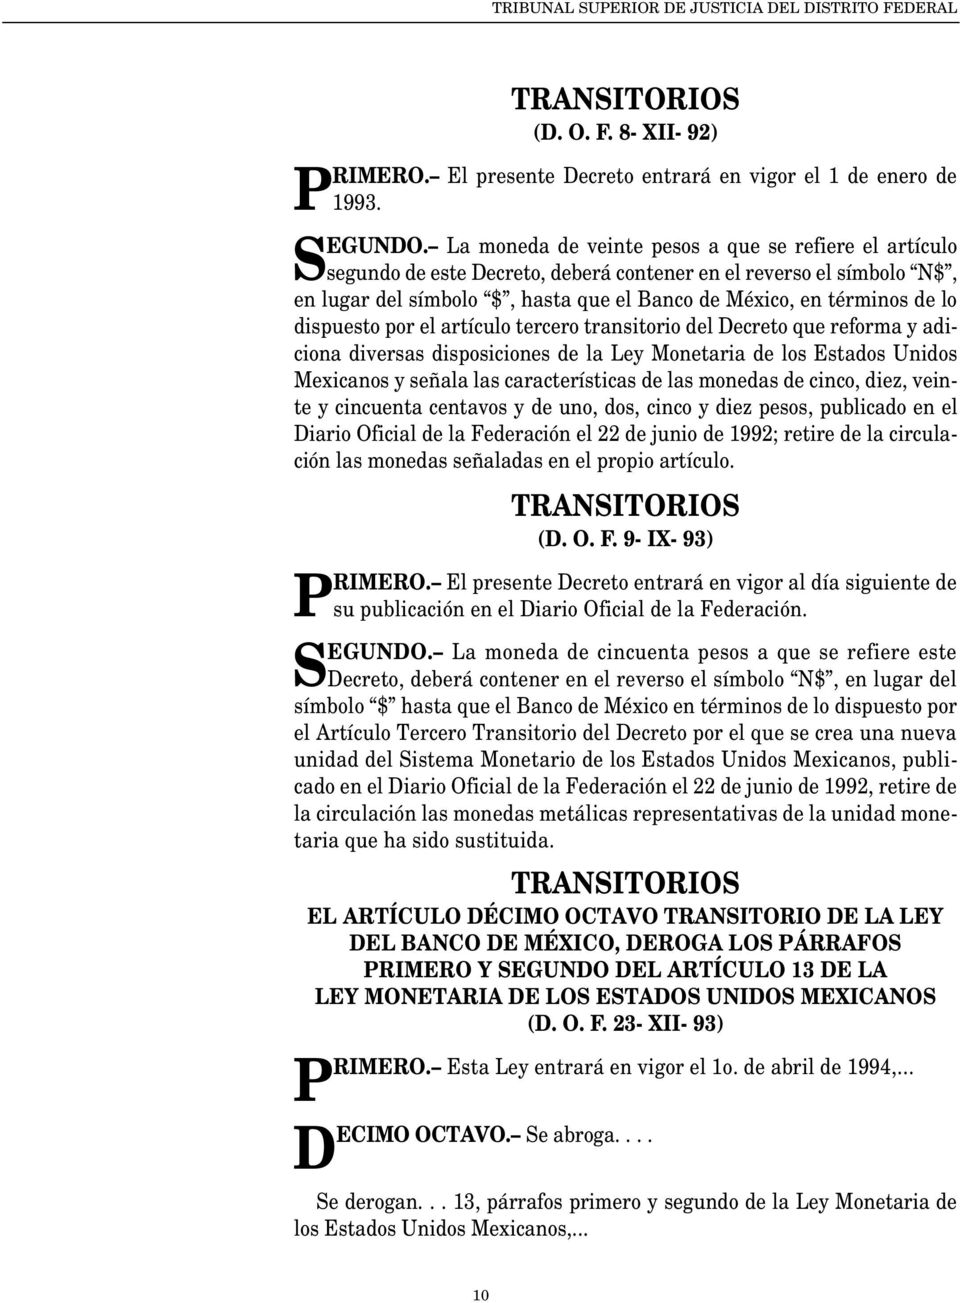 dispuesto por el artículo tercero transitorio del Decreto que reforma y adiciona diversas disposiciones de la Ley Monetaria de los Estados Unidos Mexicanos y señala las características de las monedas